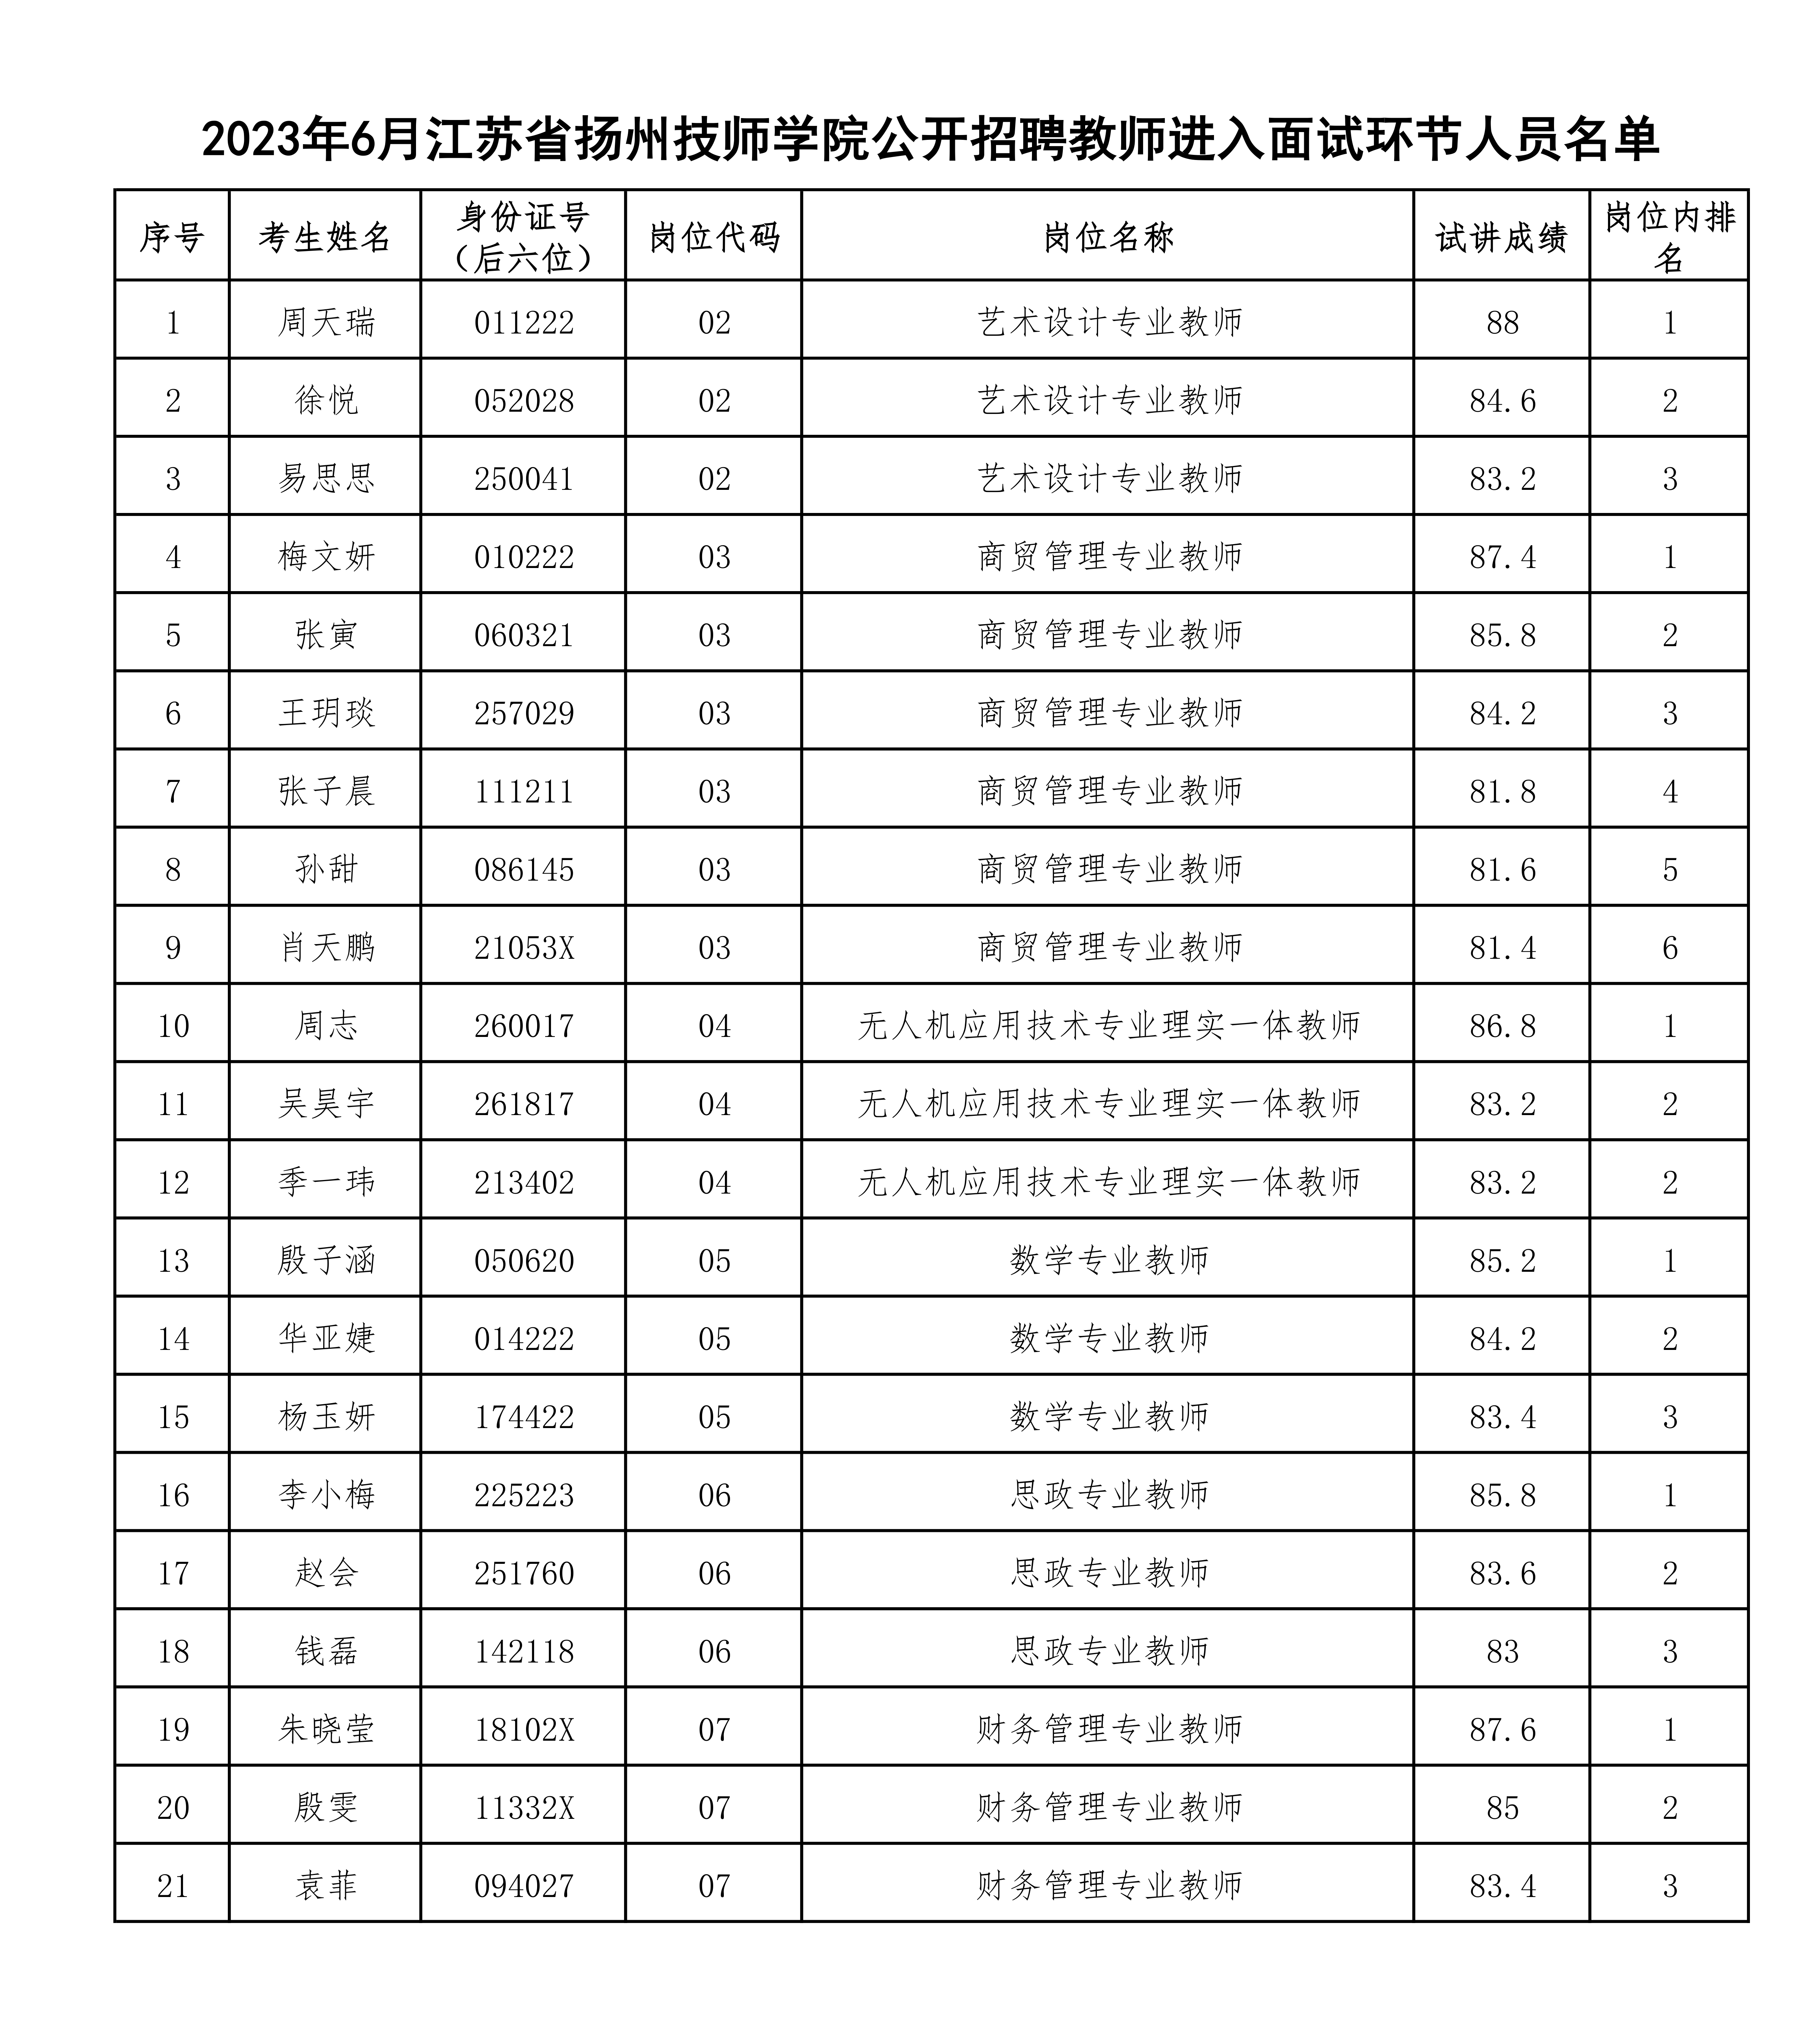 2023年6月江苏省扬州技师学院公开招聘教师进入面试环节人员名单_1.png